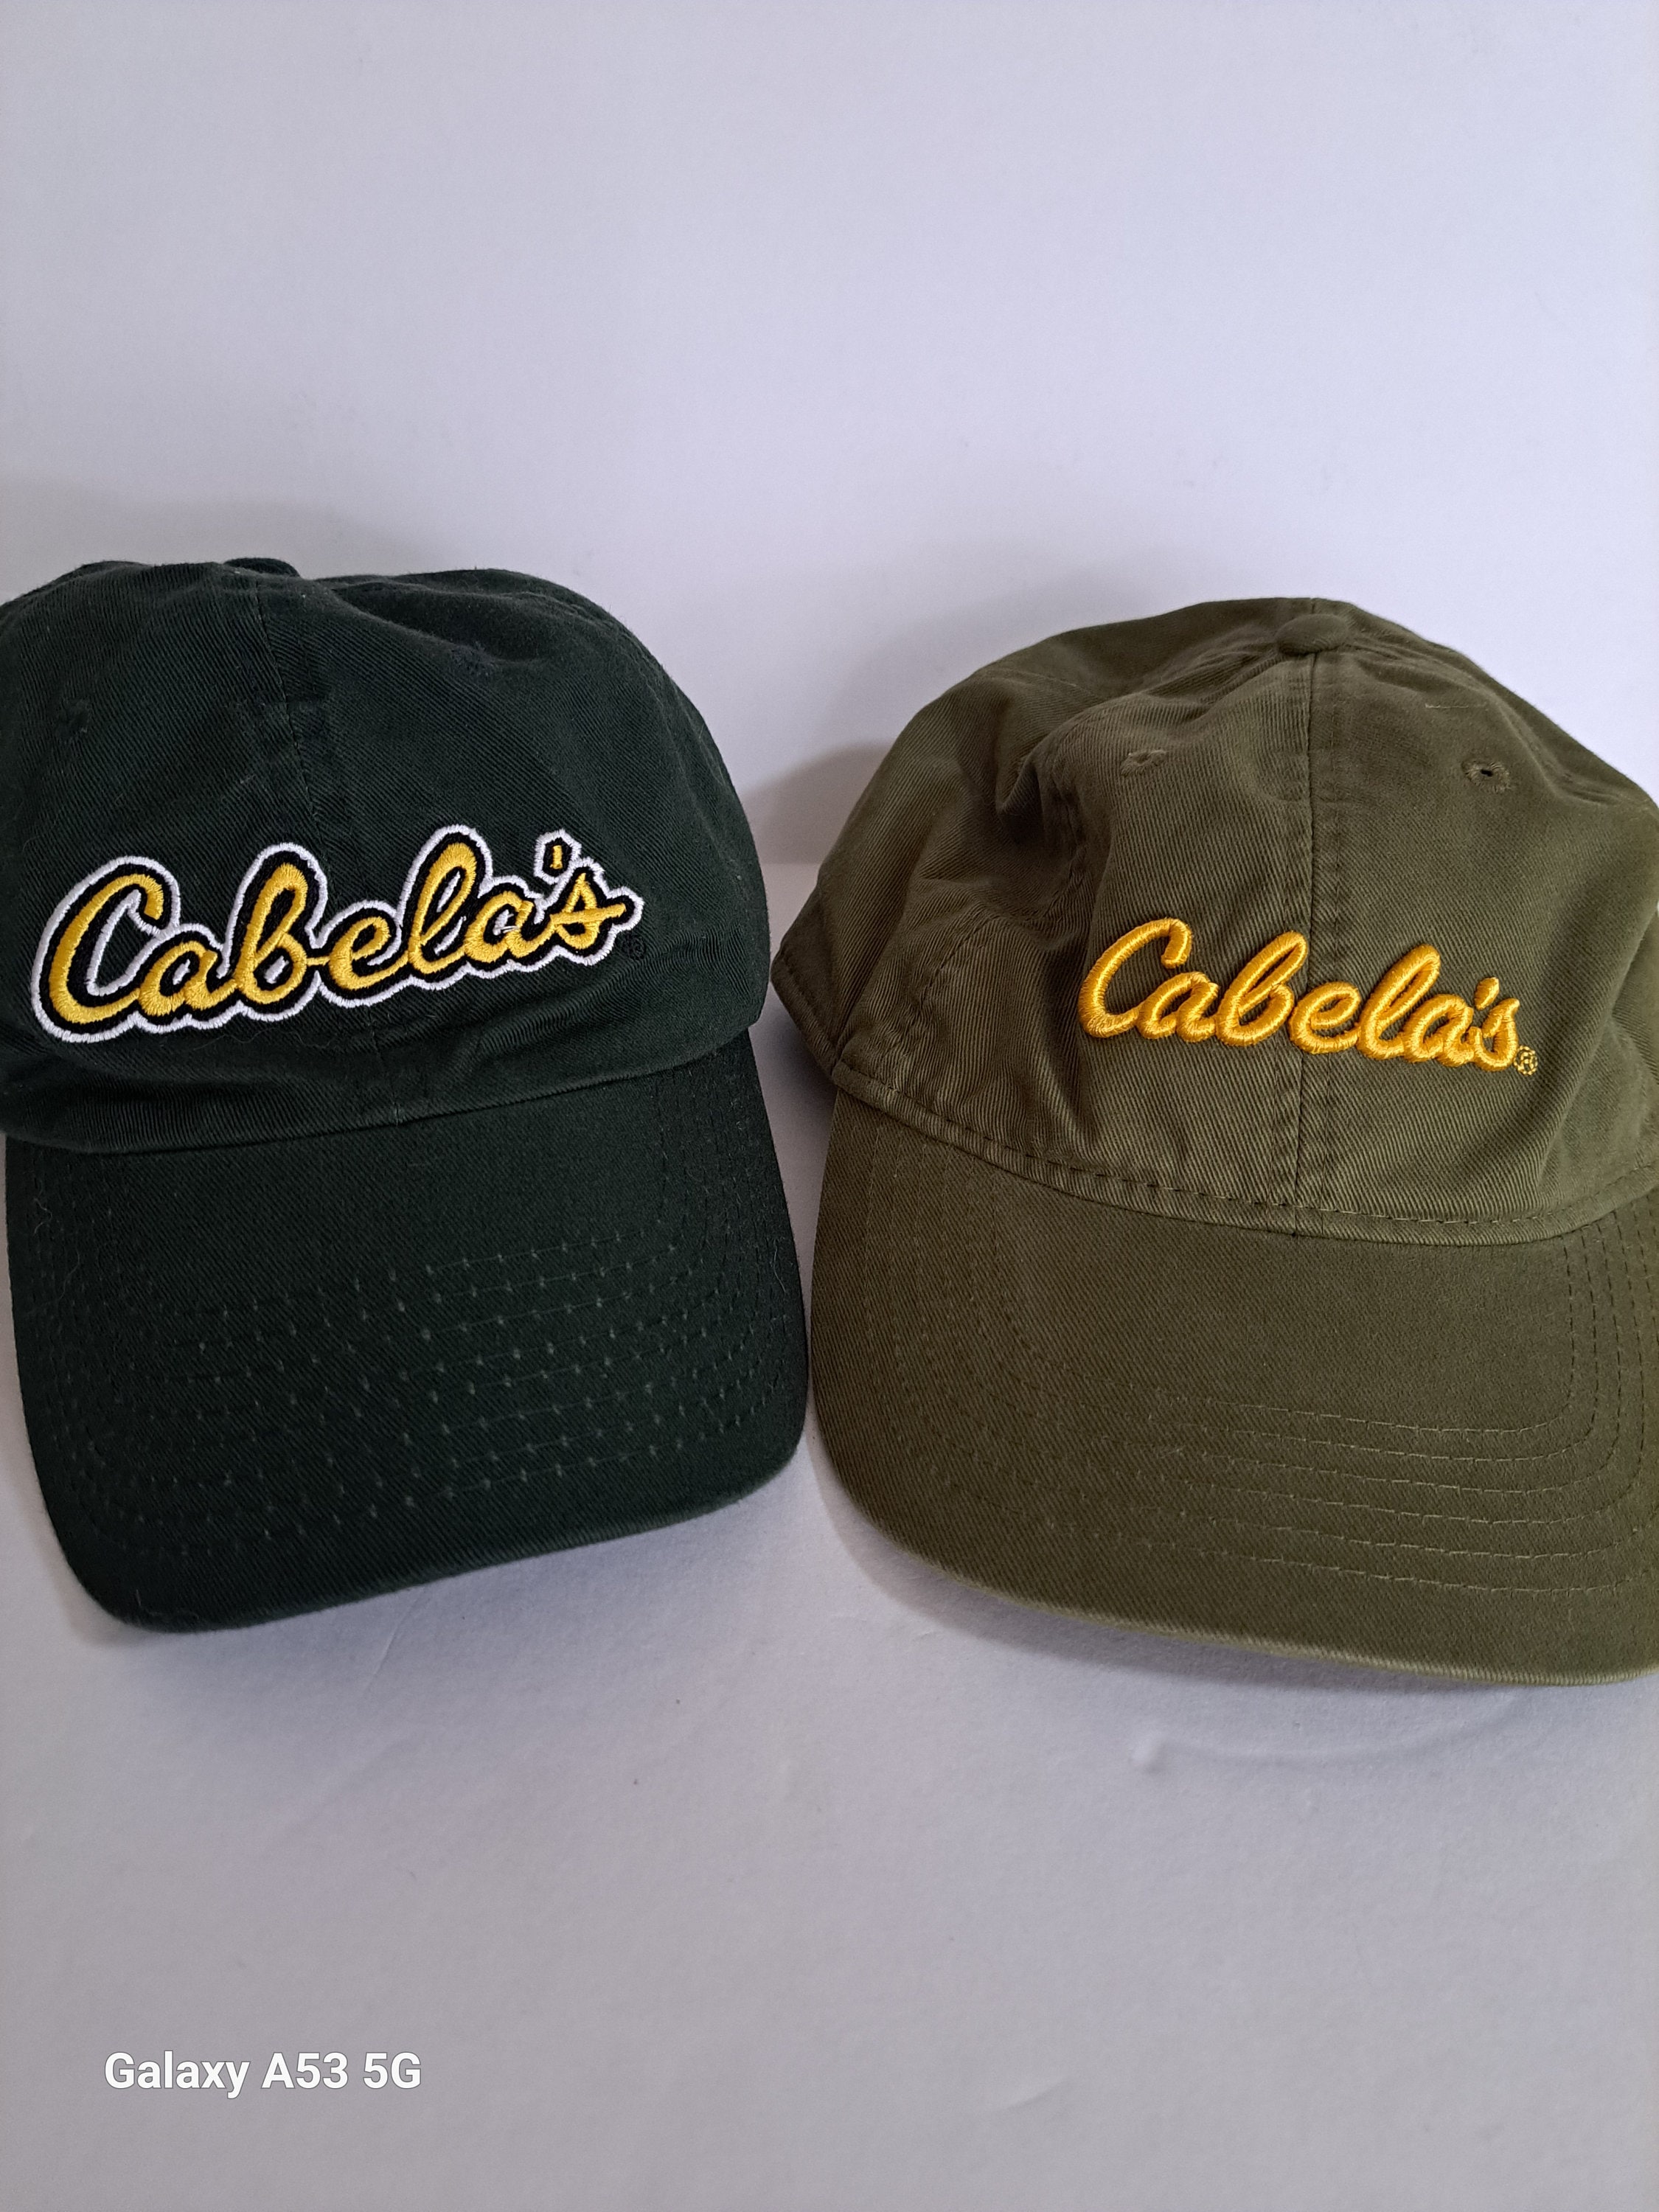 Cabelas Ballcap -  Canada